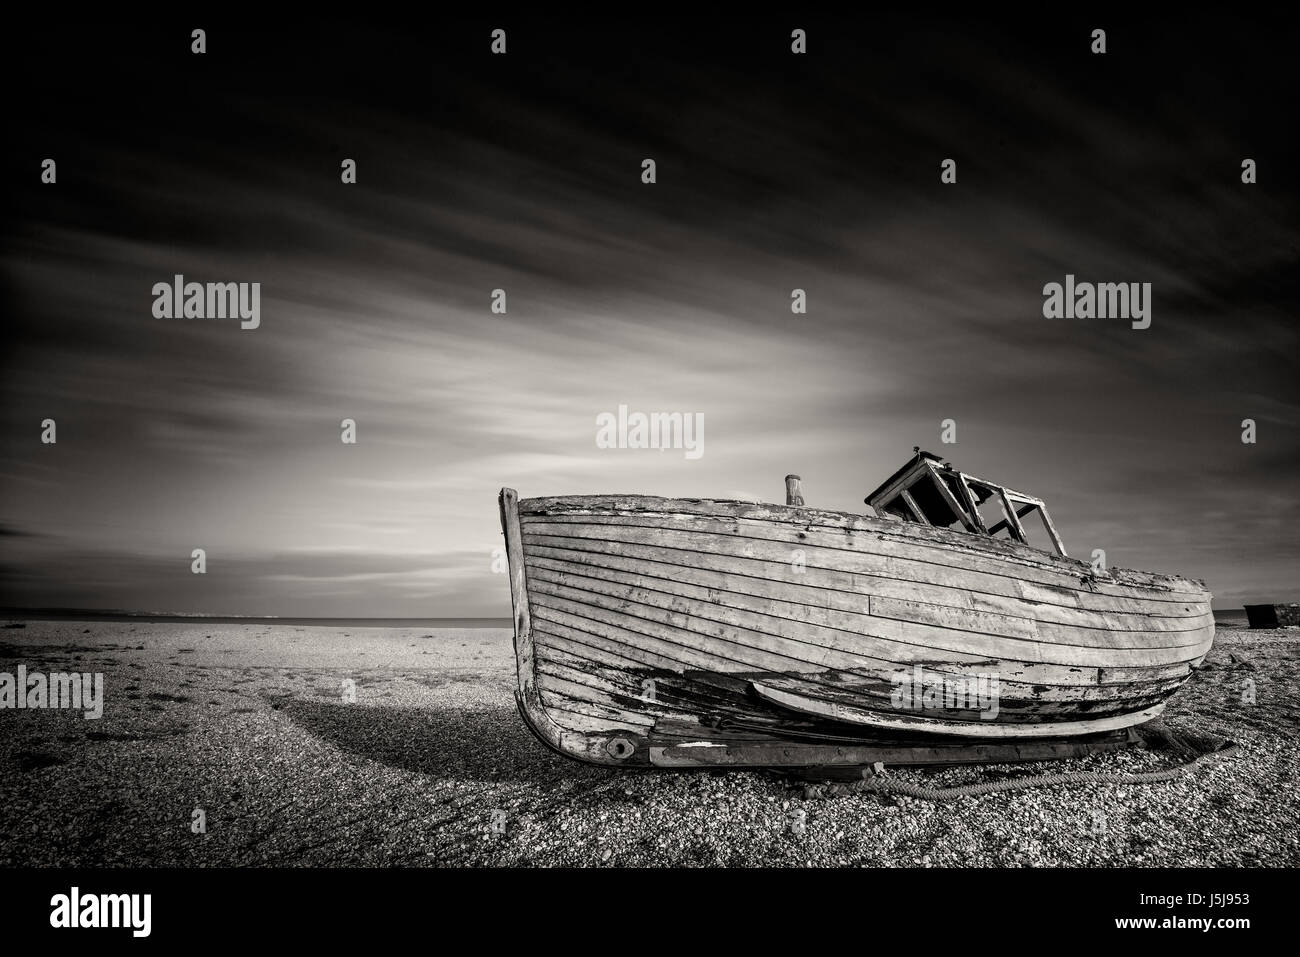 Vieux bateau de pêche abandonné seul sur une plage de galets en monochrome. Dungeness, Angleterre Banque D'Images